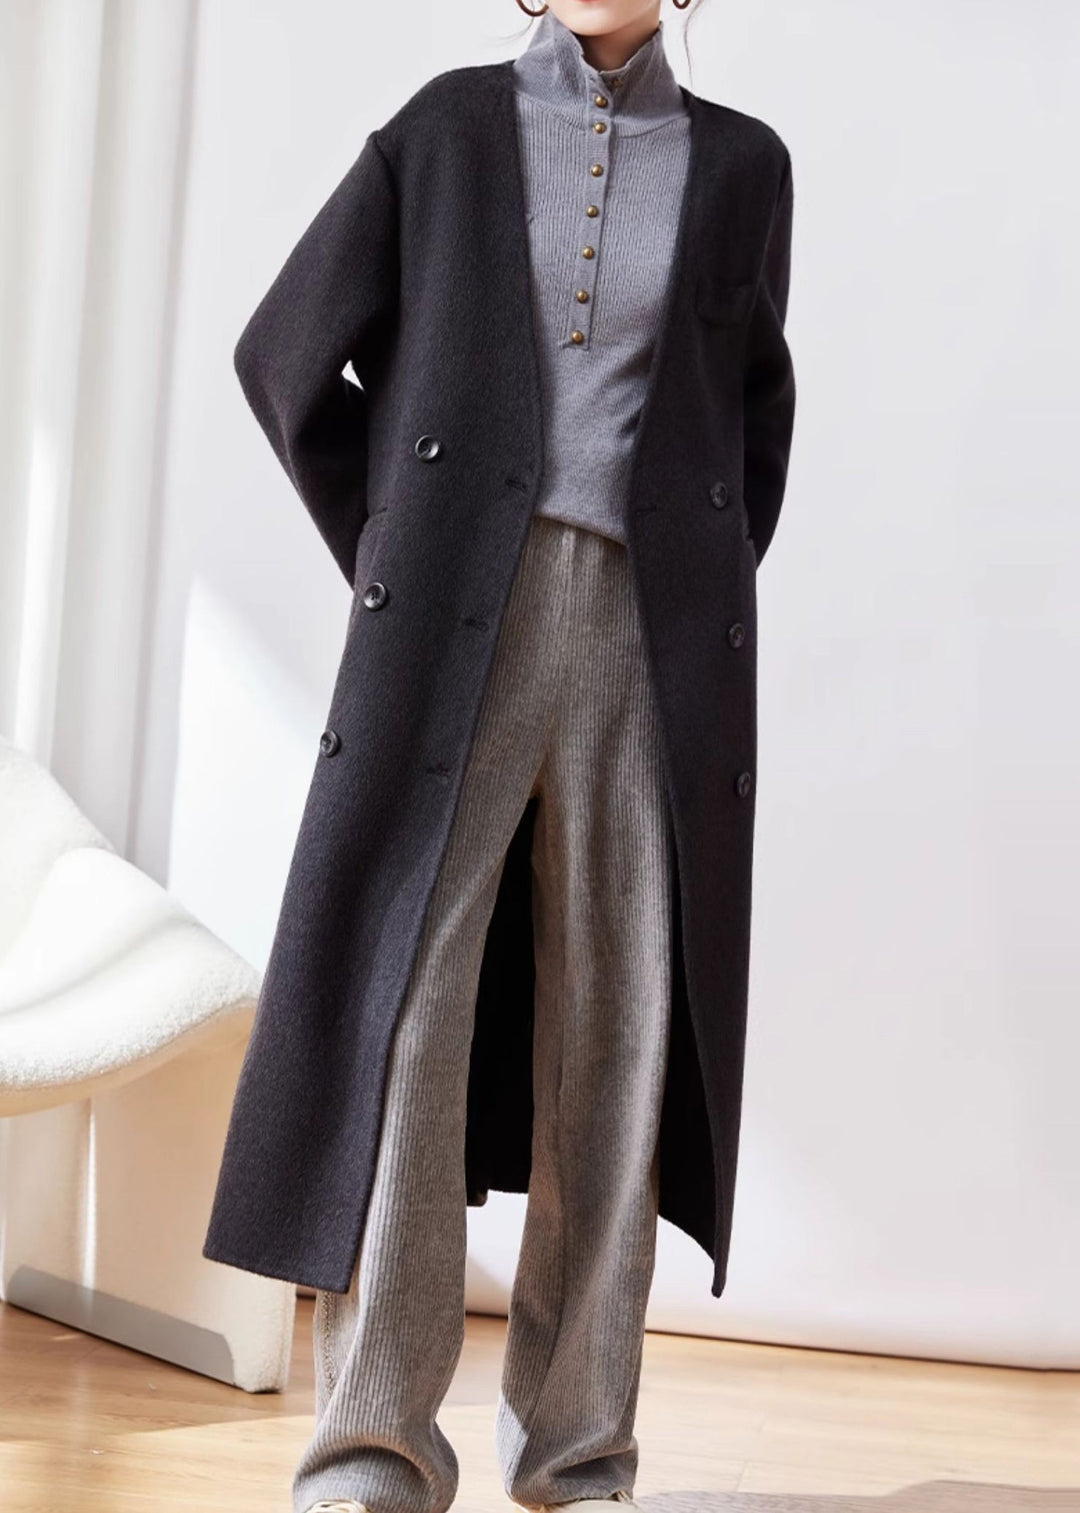 Black Button Patchwork Woolen Coat V Neck Long Sleeve